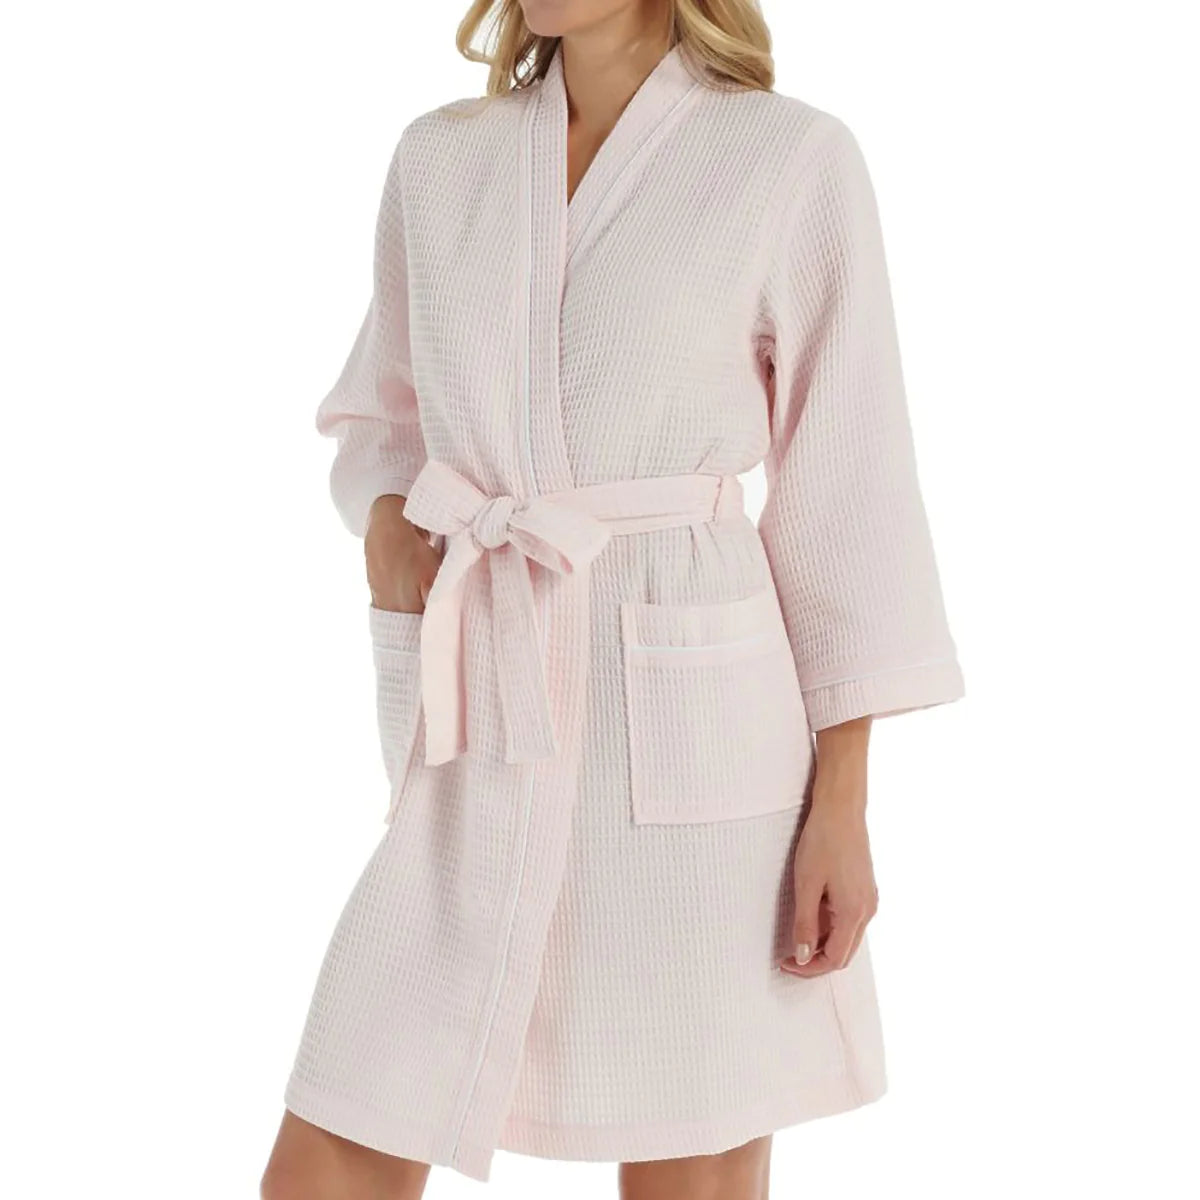 Personalized Kayanna Waffle Kimono Spa Robe - Pink